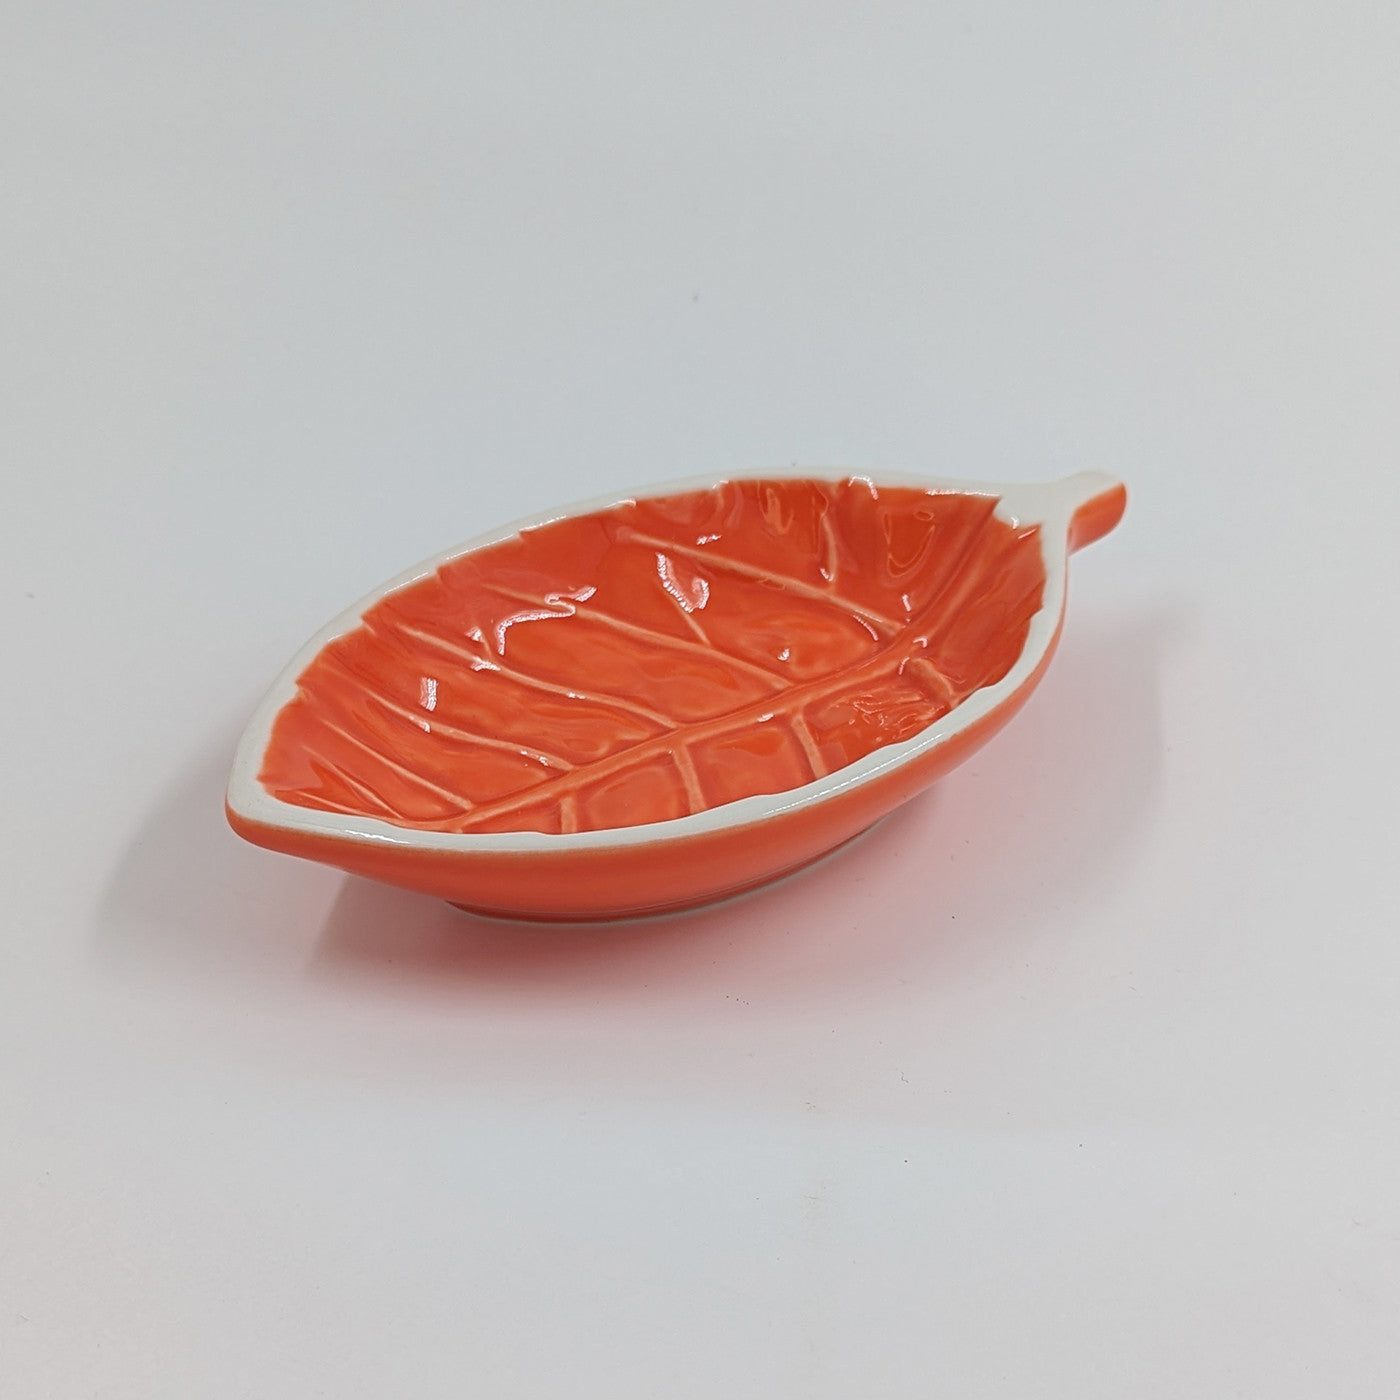 Blad - Skål, Orange - 17 cm